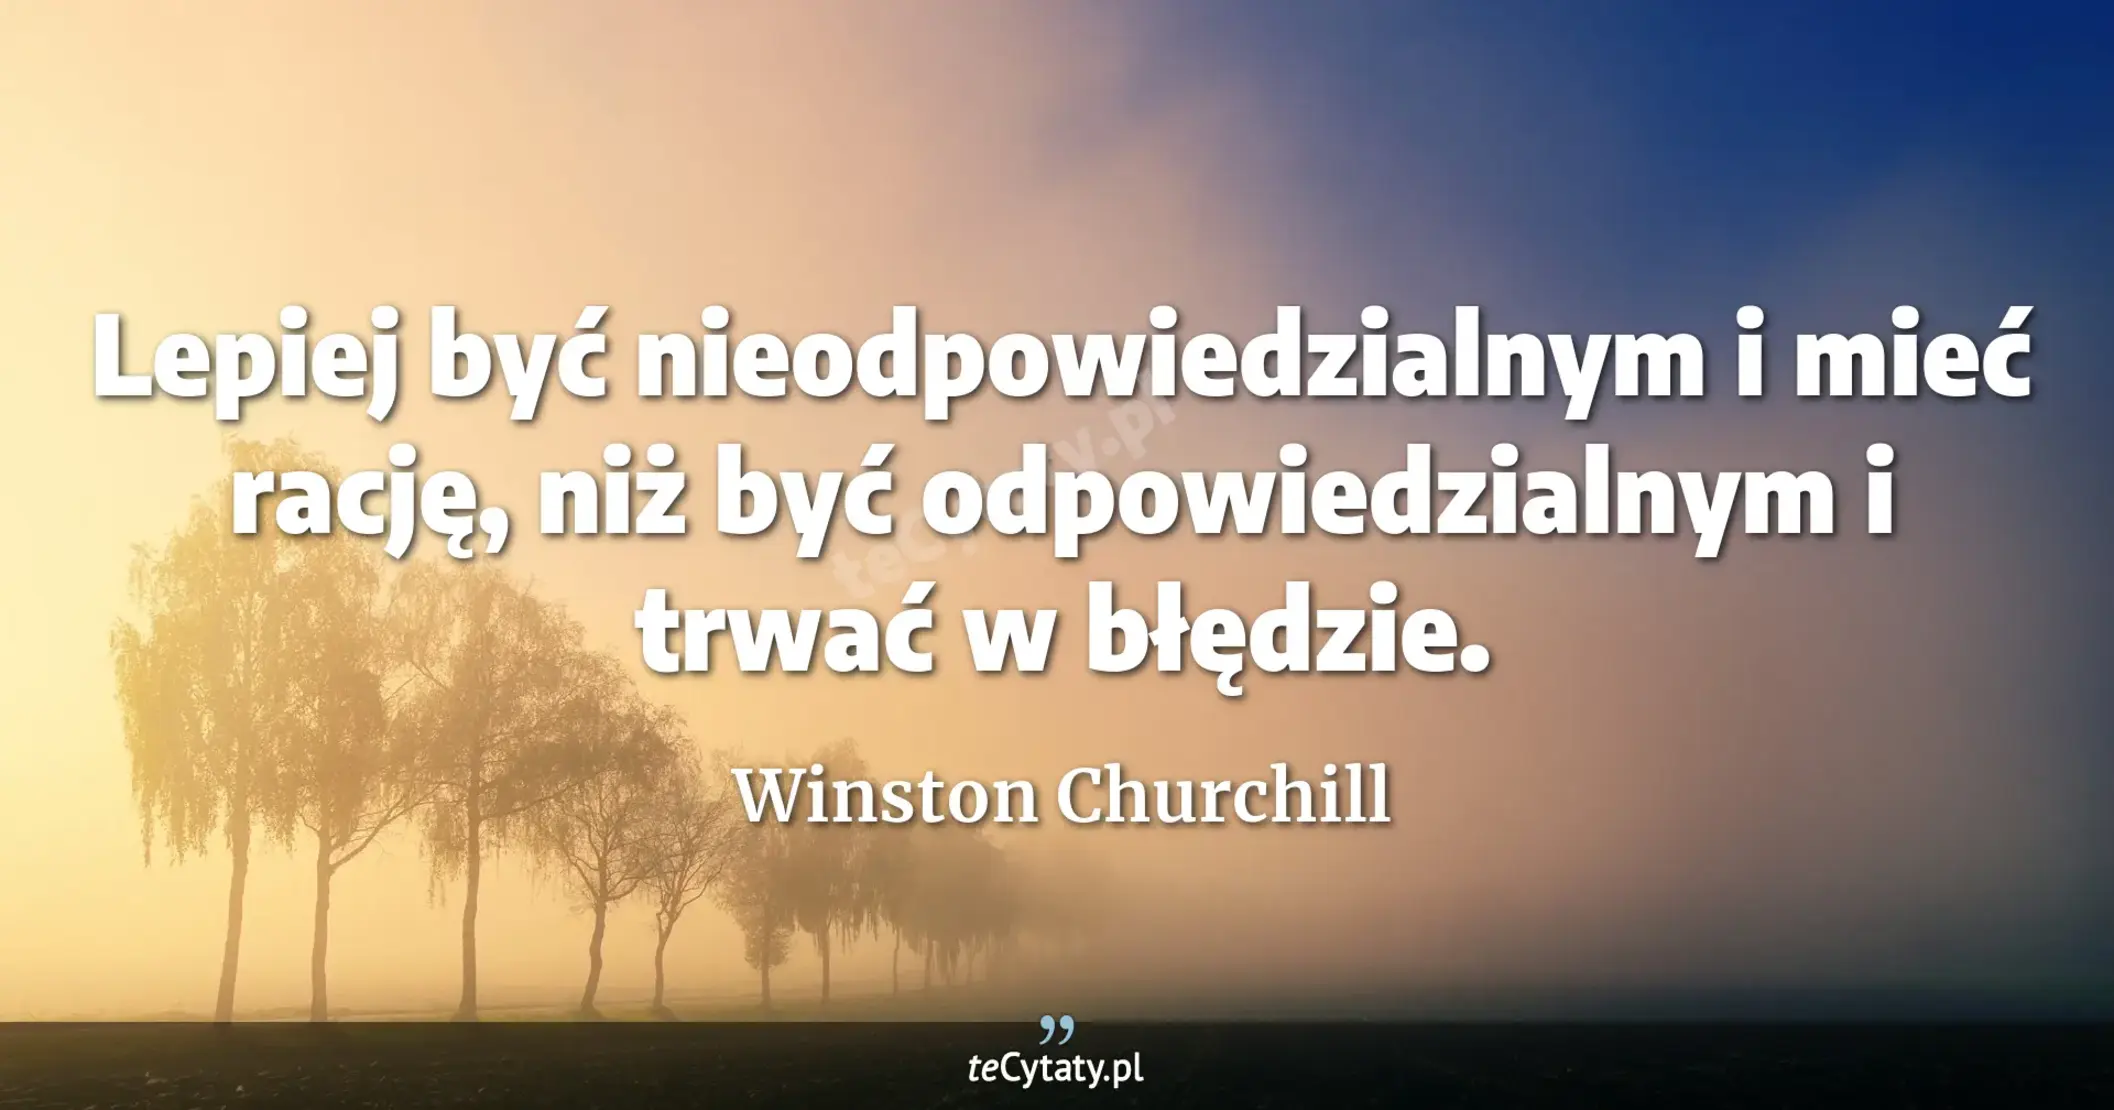 Lepiej być nieodpowiedzialnym i mieć rację, niż być odpowiedzialnym i trwać w błędzie. - Winston Churchill